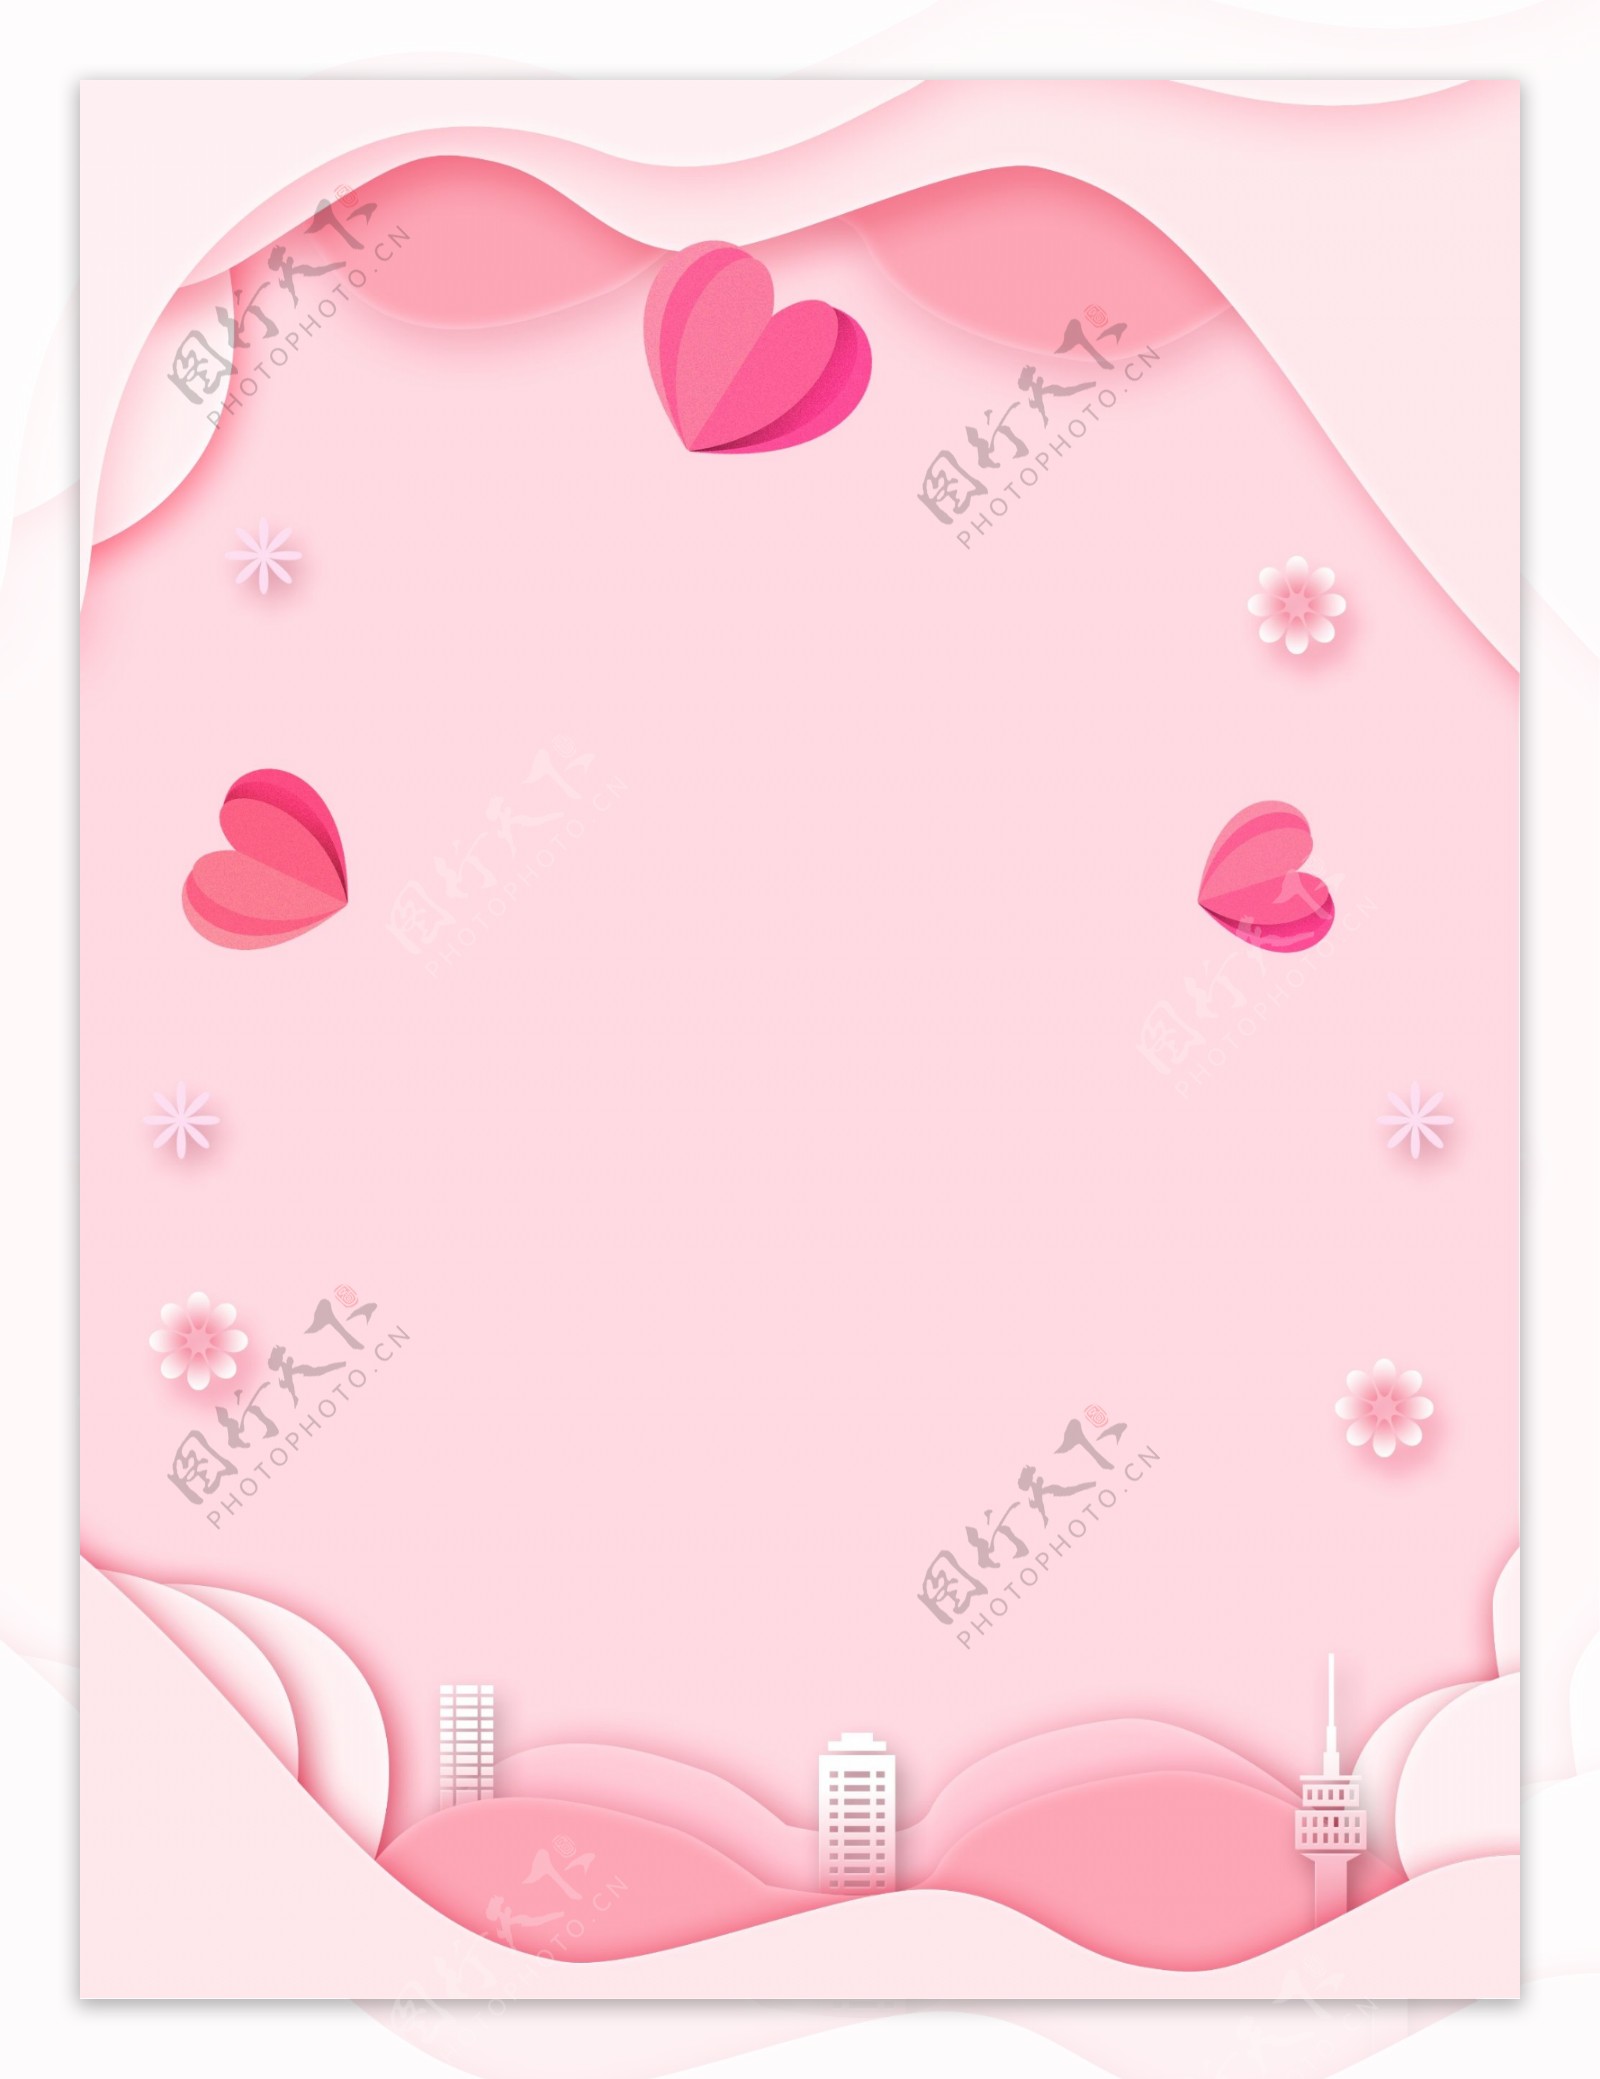 粉色剪纸风爱心情人节背景设计